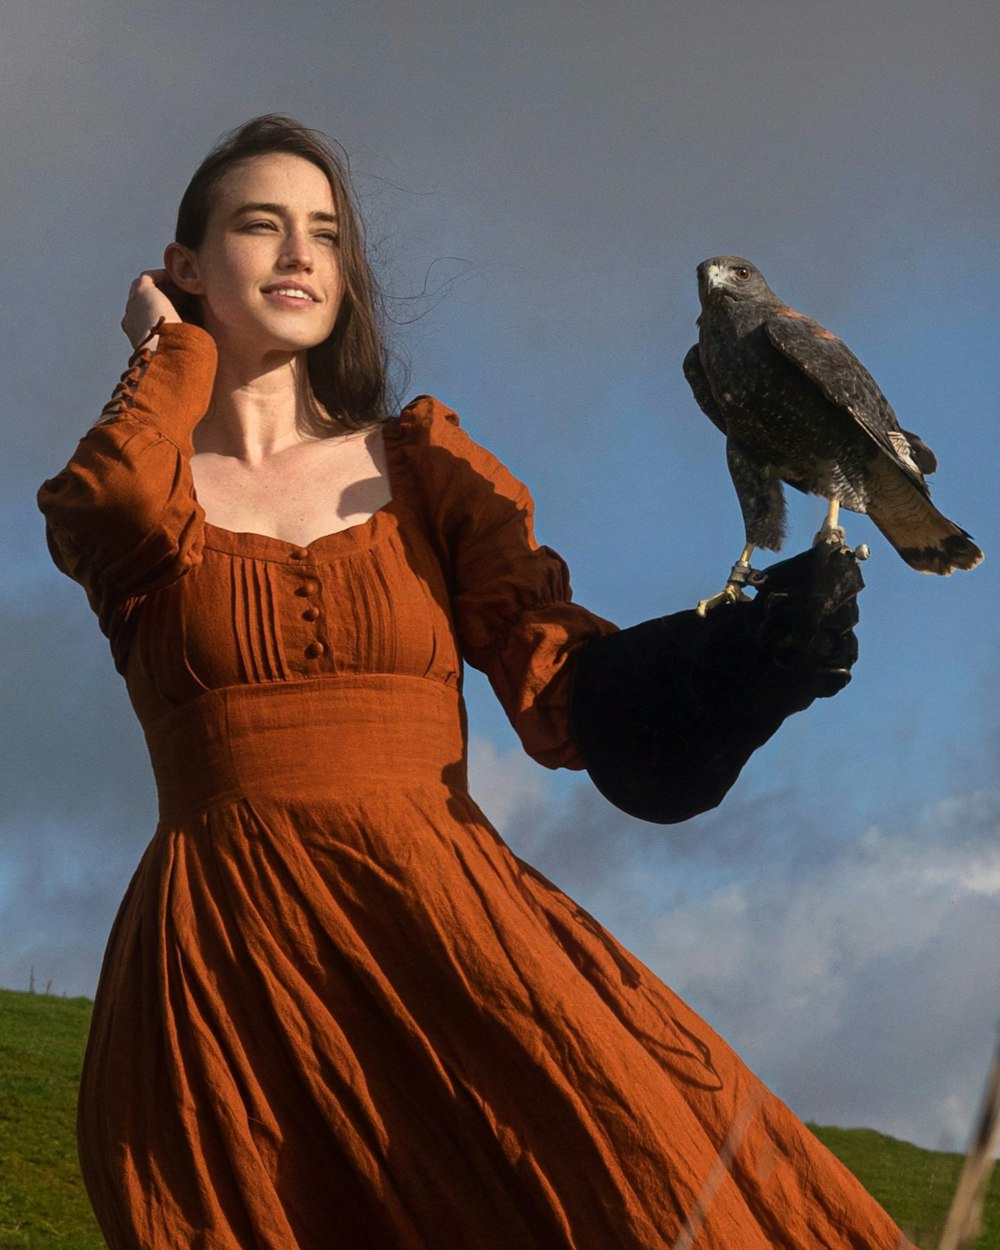 オレンジ色のドレスを着た女性が腕に鳥を抱いている